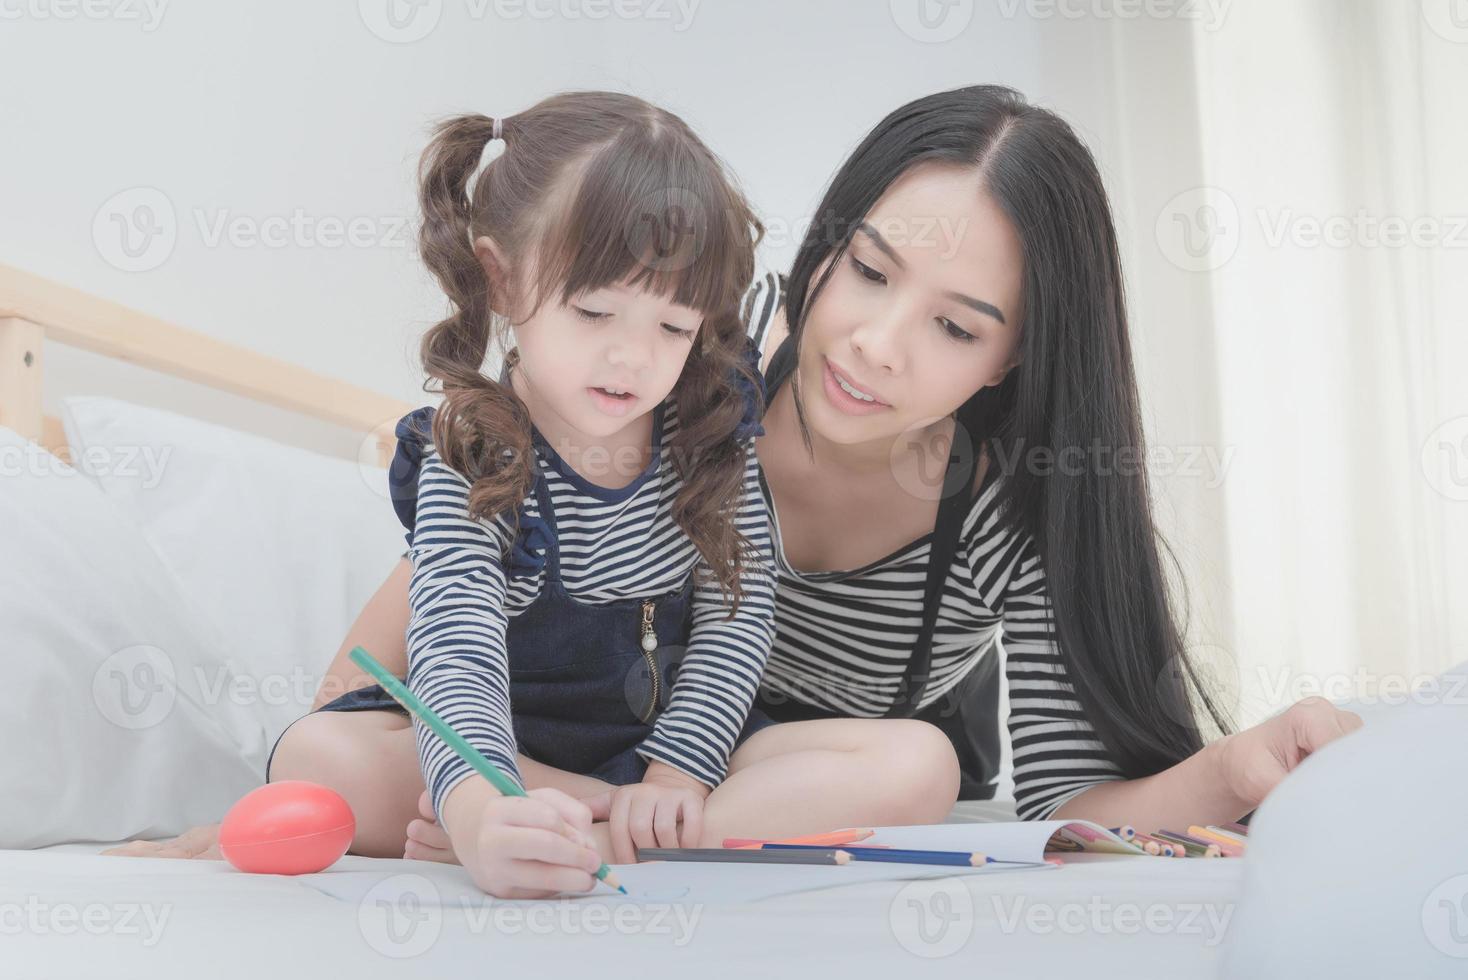 famille heureuse dans la chambre, mère asiatique apprenant à sa fille à apprendre pour le préscolaire. conception de photos pour le concept de famille, d'enfants et de gens heureux.